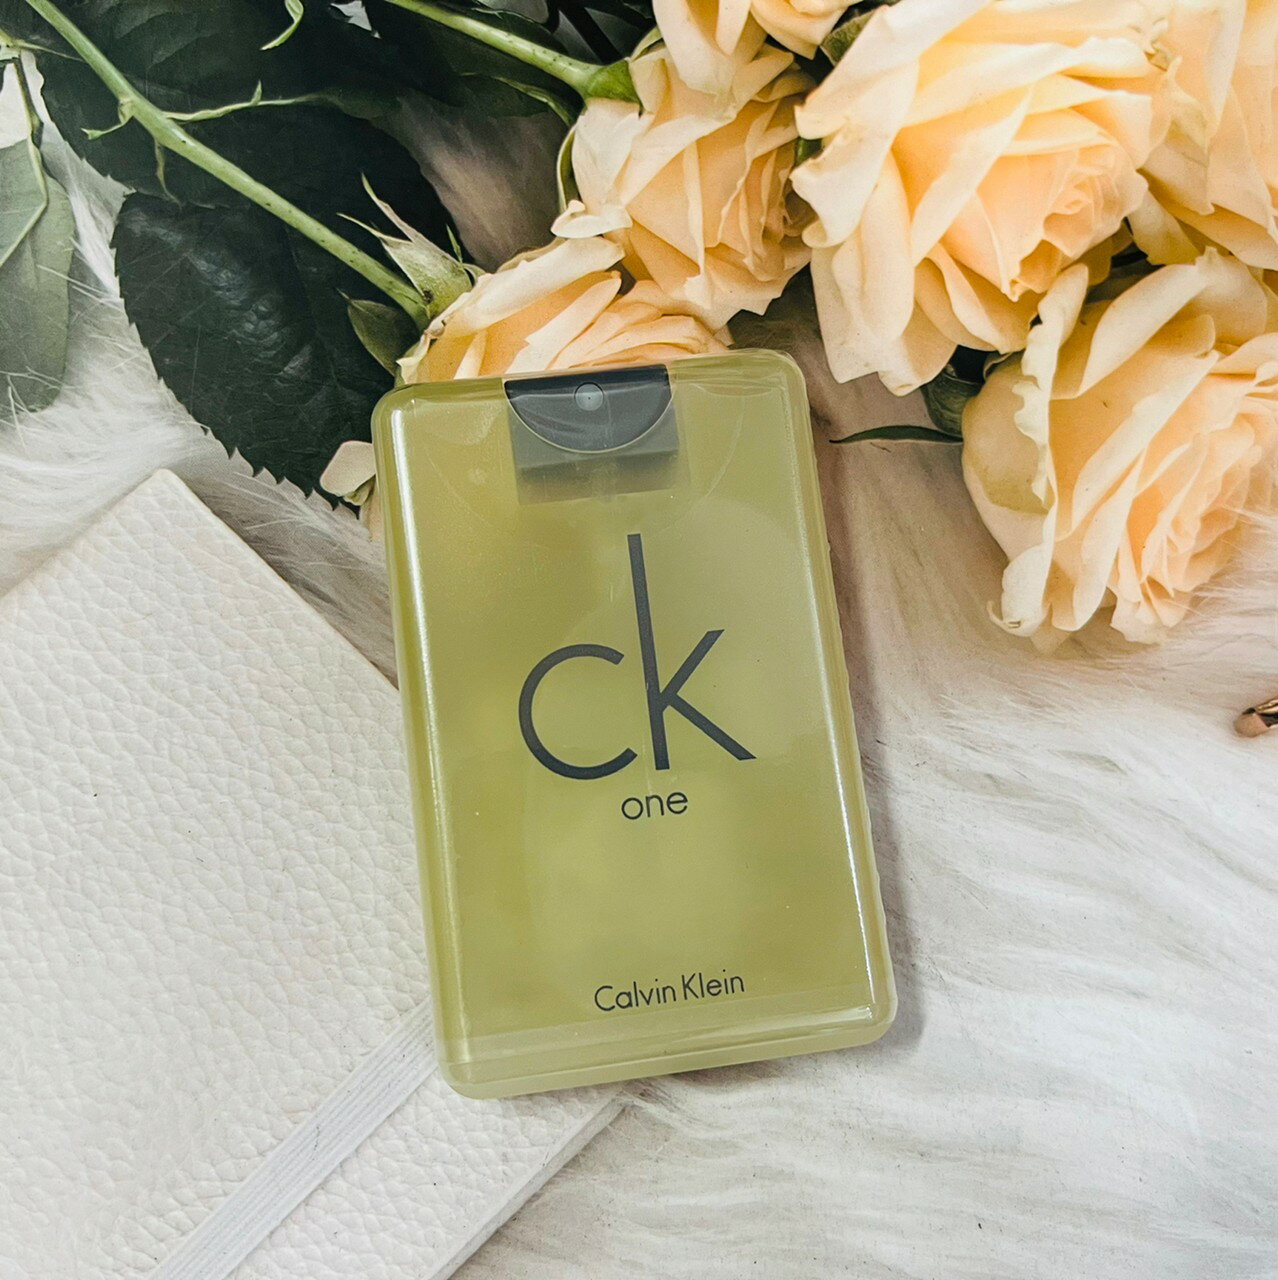 CK Calvin Klein one 中性淡香水 20ml 隨身版香水 攜帶版｜全店$199免運